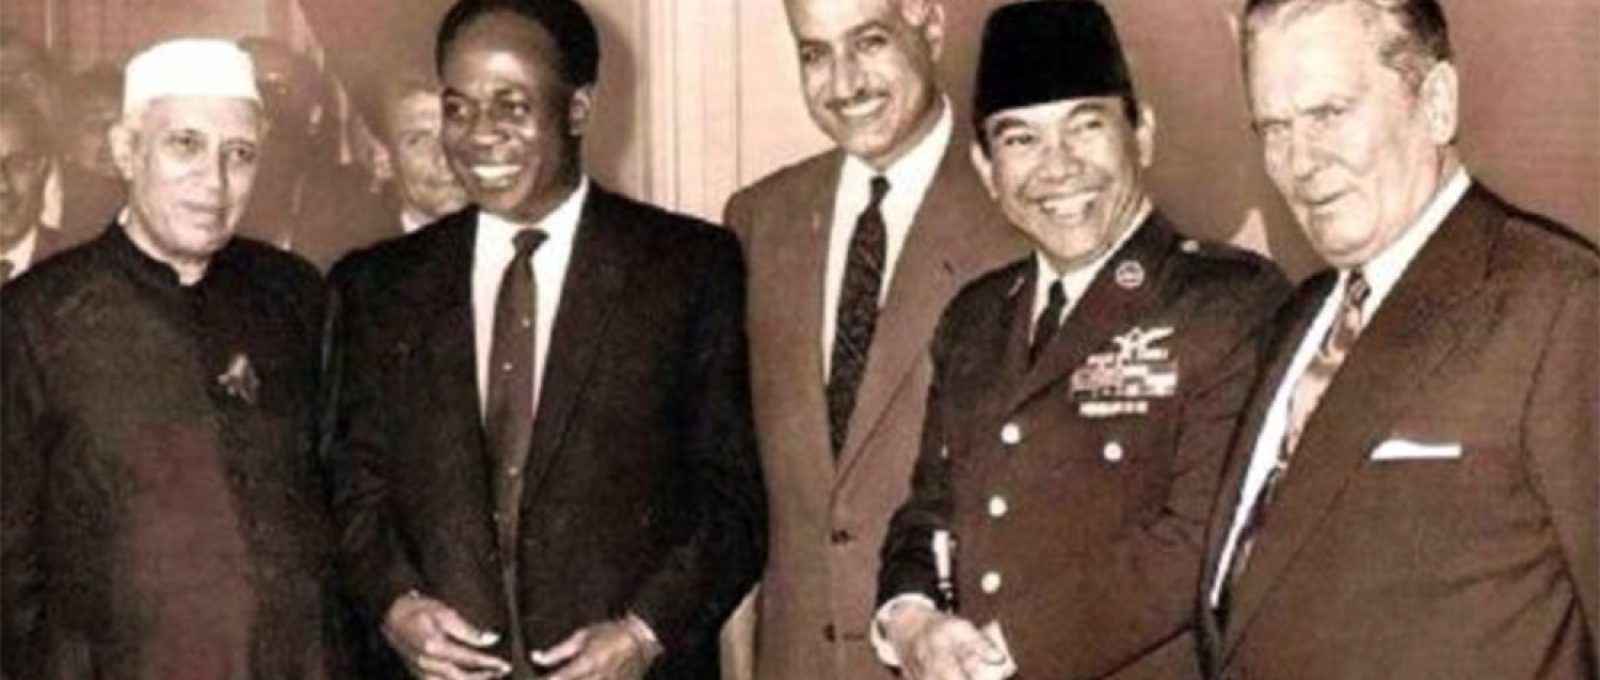 Jawaharlal Nehru, da Índia, Kwame Nkrumah, de Gana, Gamal Abdel Nasser, do Egito, Sukarno, da Indonésia, e Josip Broz Tito, da Iugoslávia, na Conferência de Bandung em 1955 (Medium).